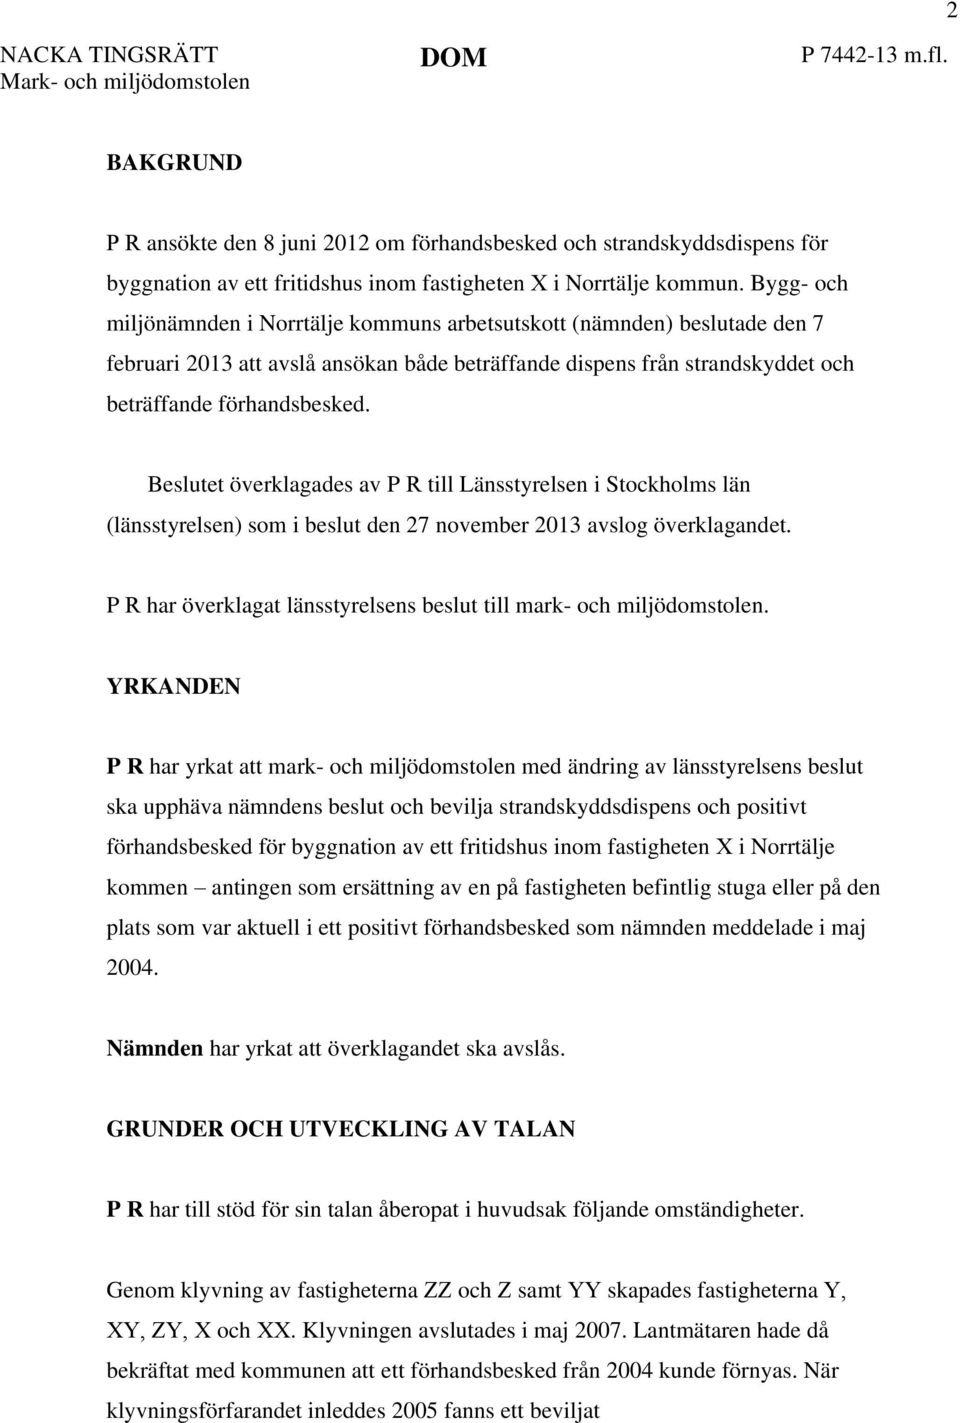 Bygg- och miljönämnden i Norrtälje kommuns arbetsutskott (nämnden) beslutade den 7 februari 2013 att avslå ansökan både beträffande dispens från strandskyddet och beträffande förhandsbesked.